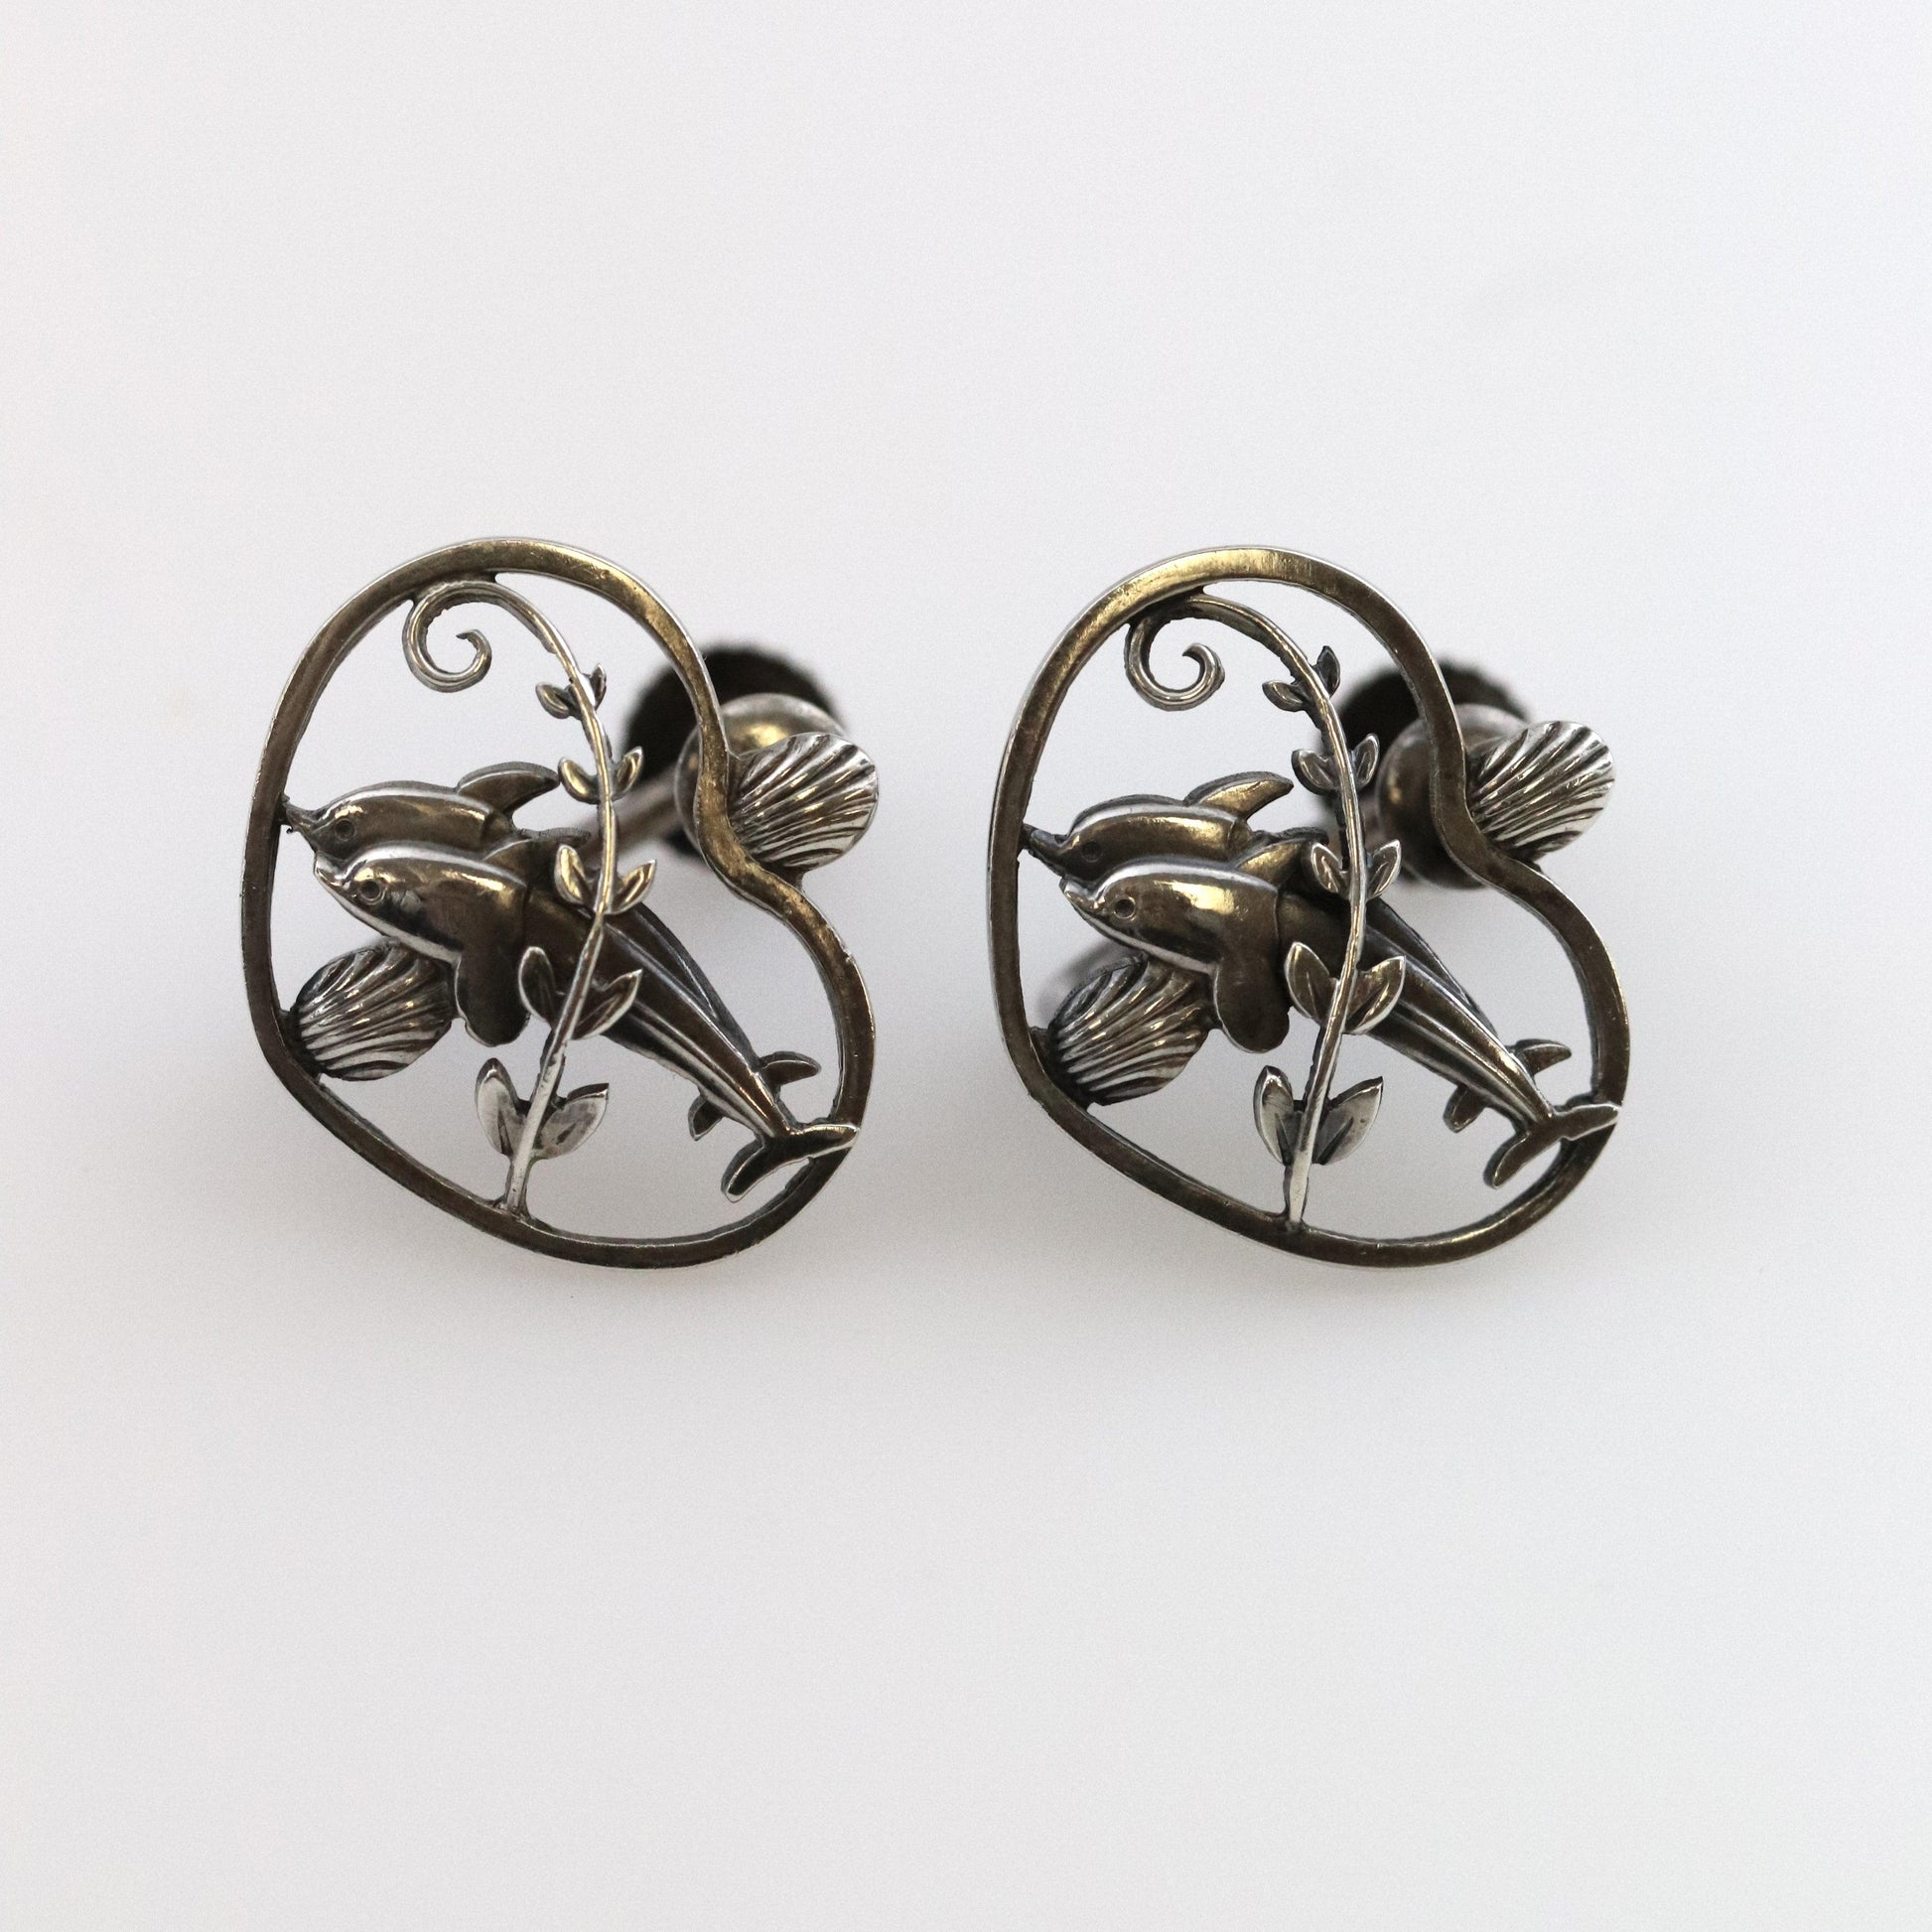 Vintage Georg Jensen Jewelry | Arno Malinowski Dolphin and Heart Earrings 101 - Carmel Fine Silver Jewelry